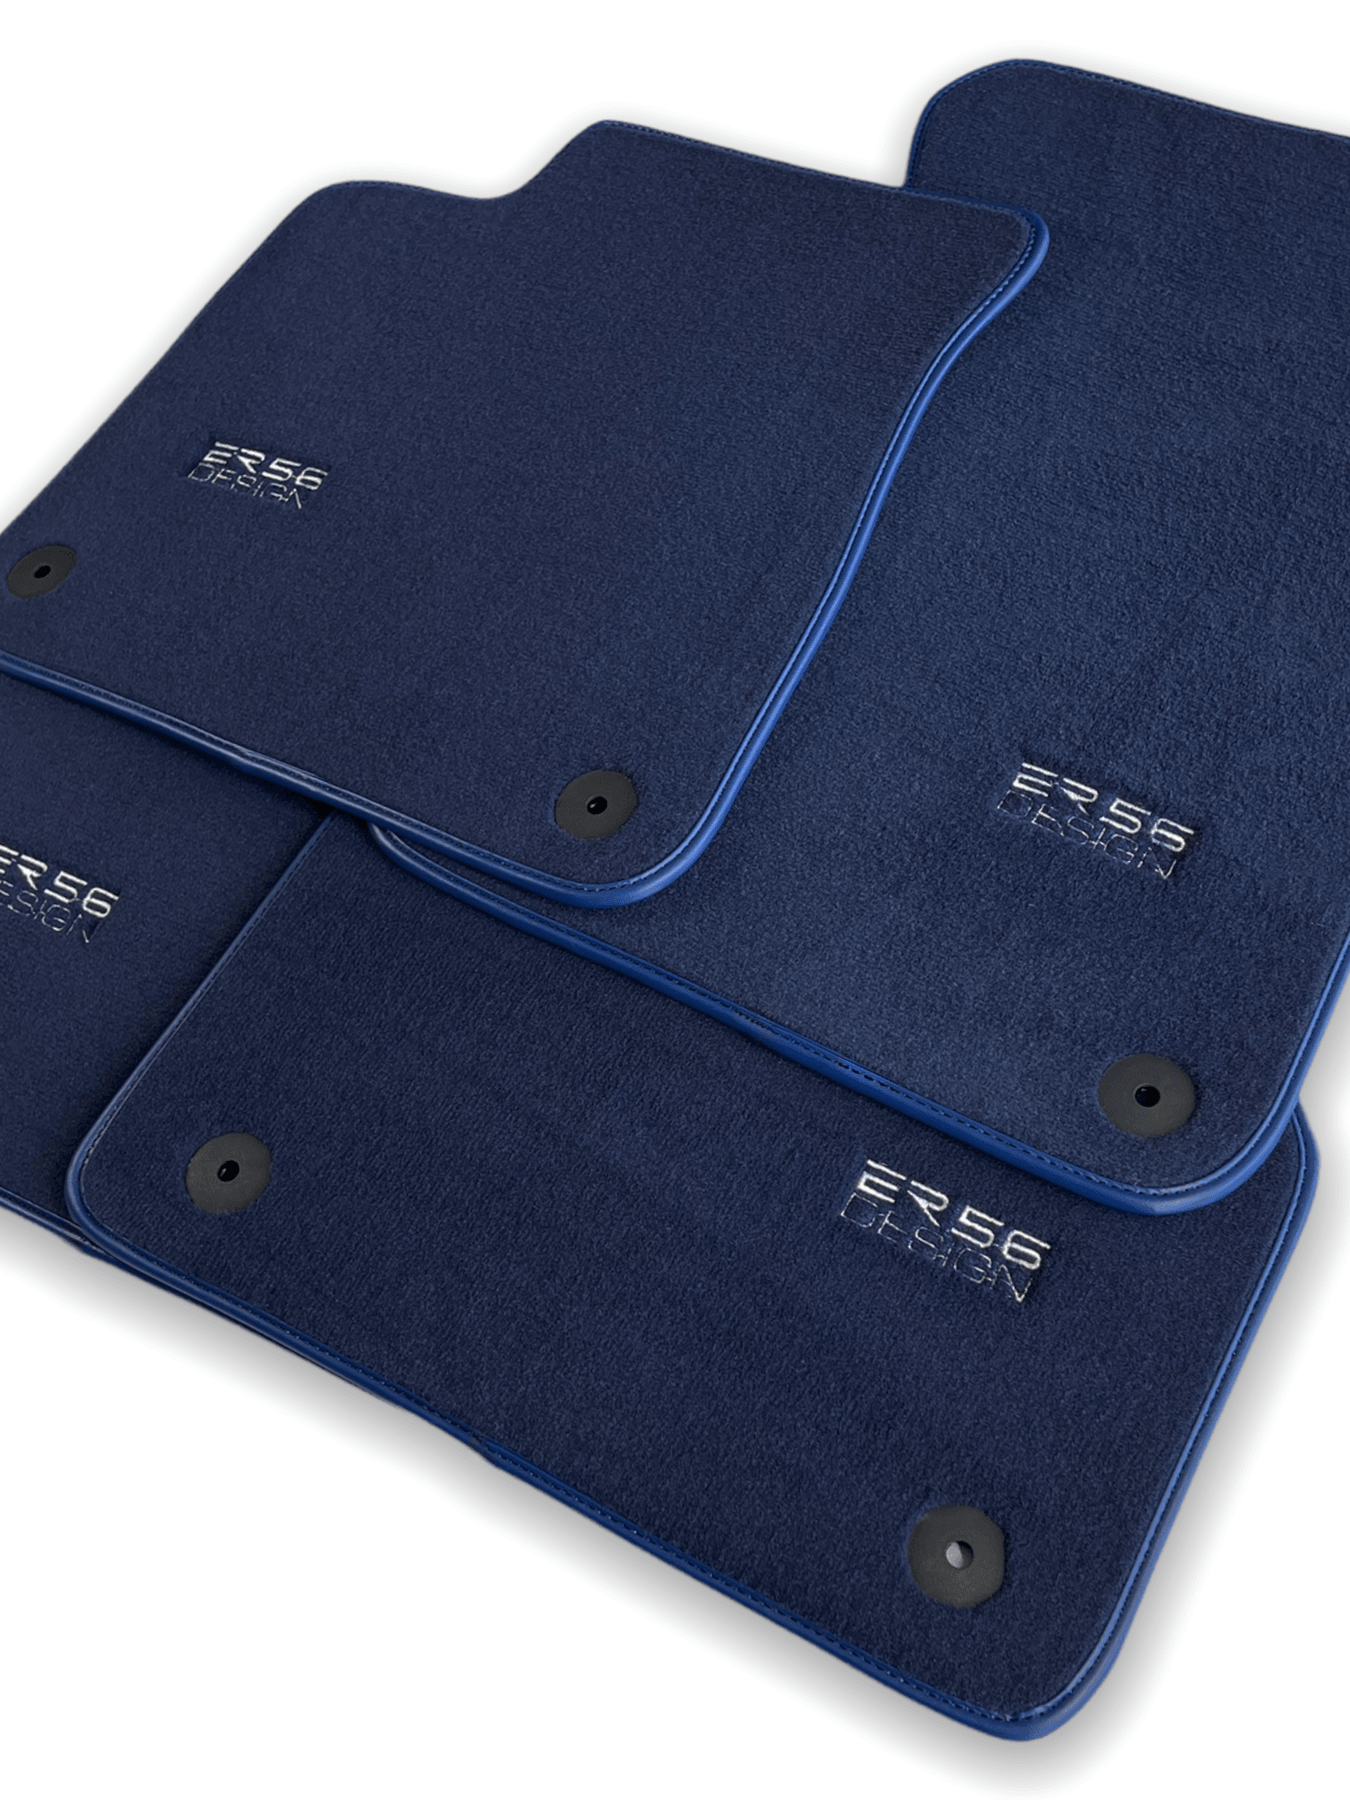 Dark Blue Floor Mats for Audi A6 - C8 Allroad Quattro (2019-2023) | ER56 Design